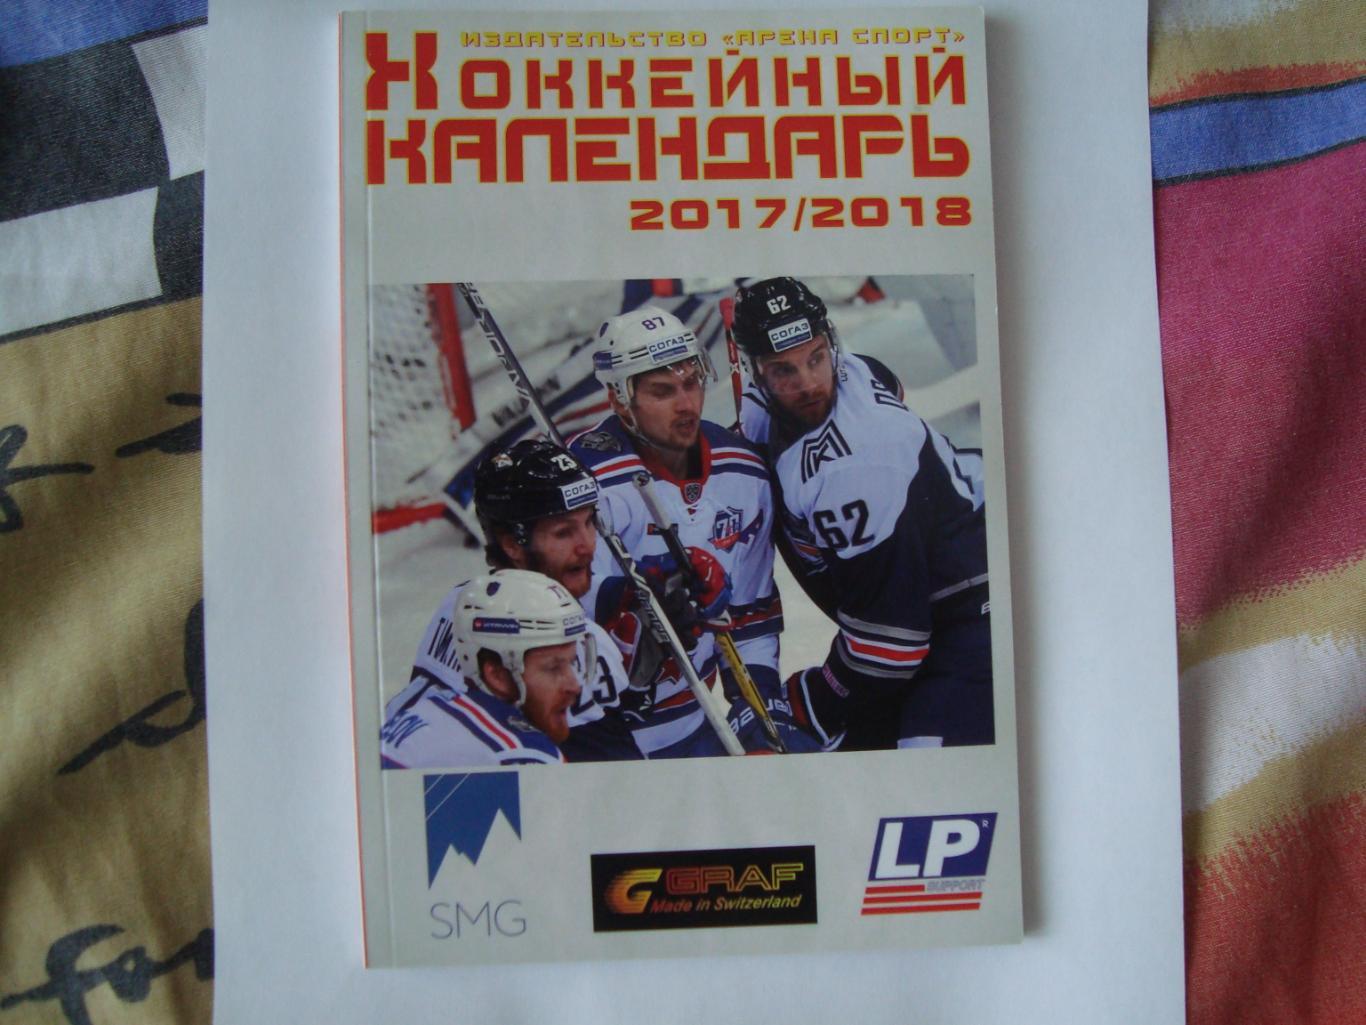 Хоккейный календарь 2017/2018 Москва Арена спорт